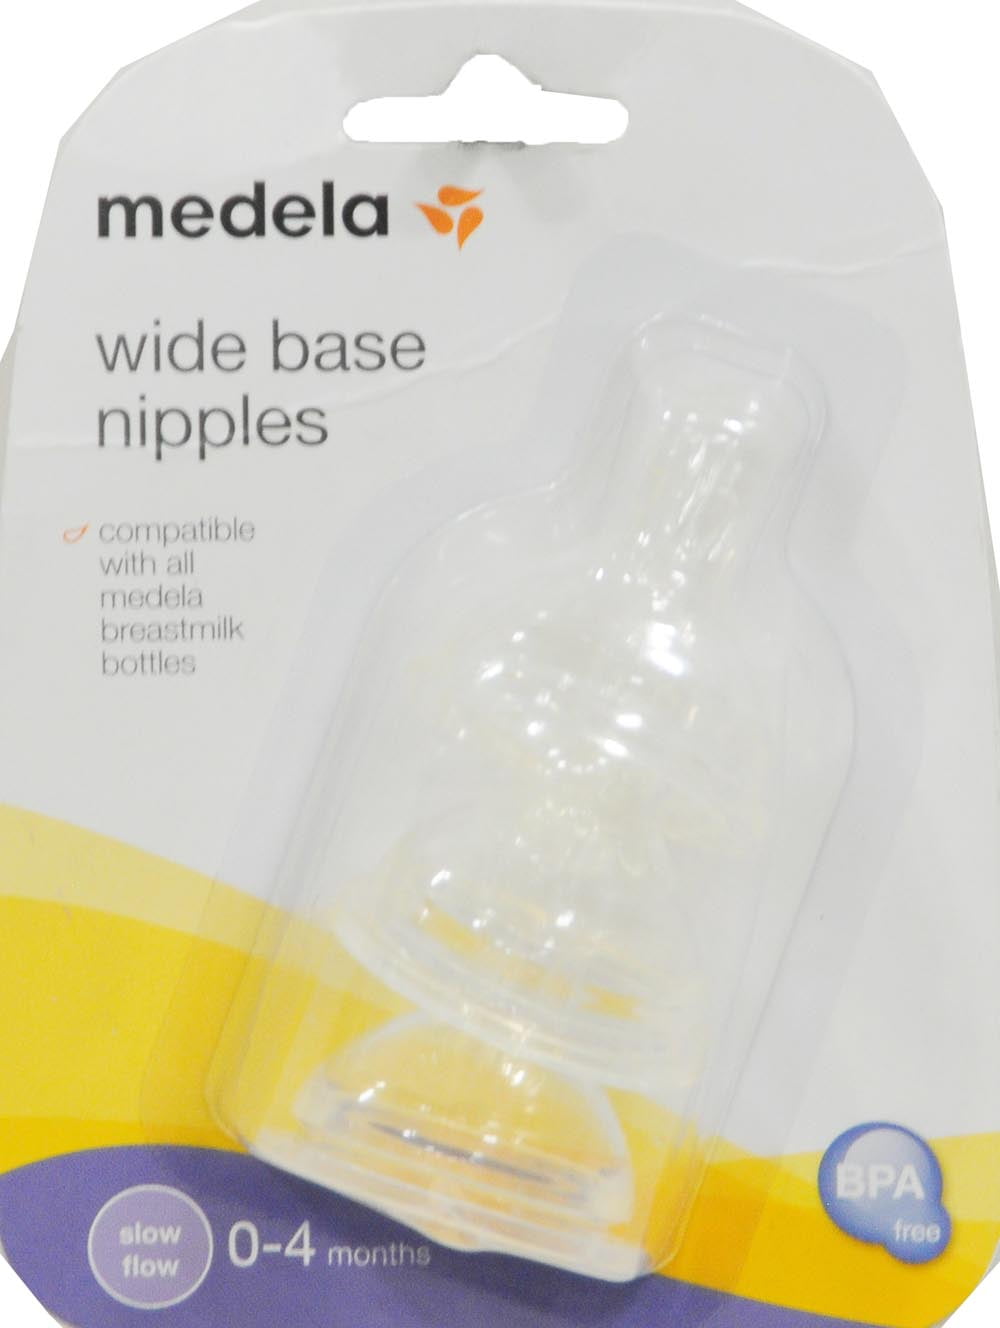 Medela Nipples, Wide Base, Slow Flow, 0-4 Months - 3 nipples